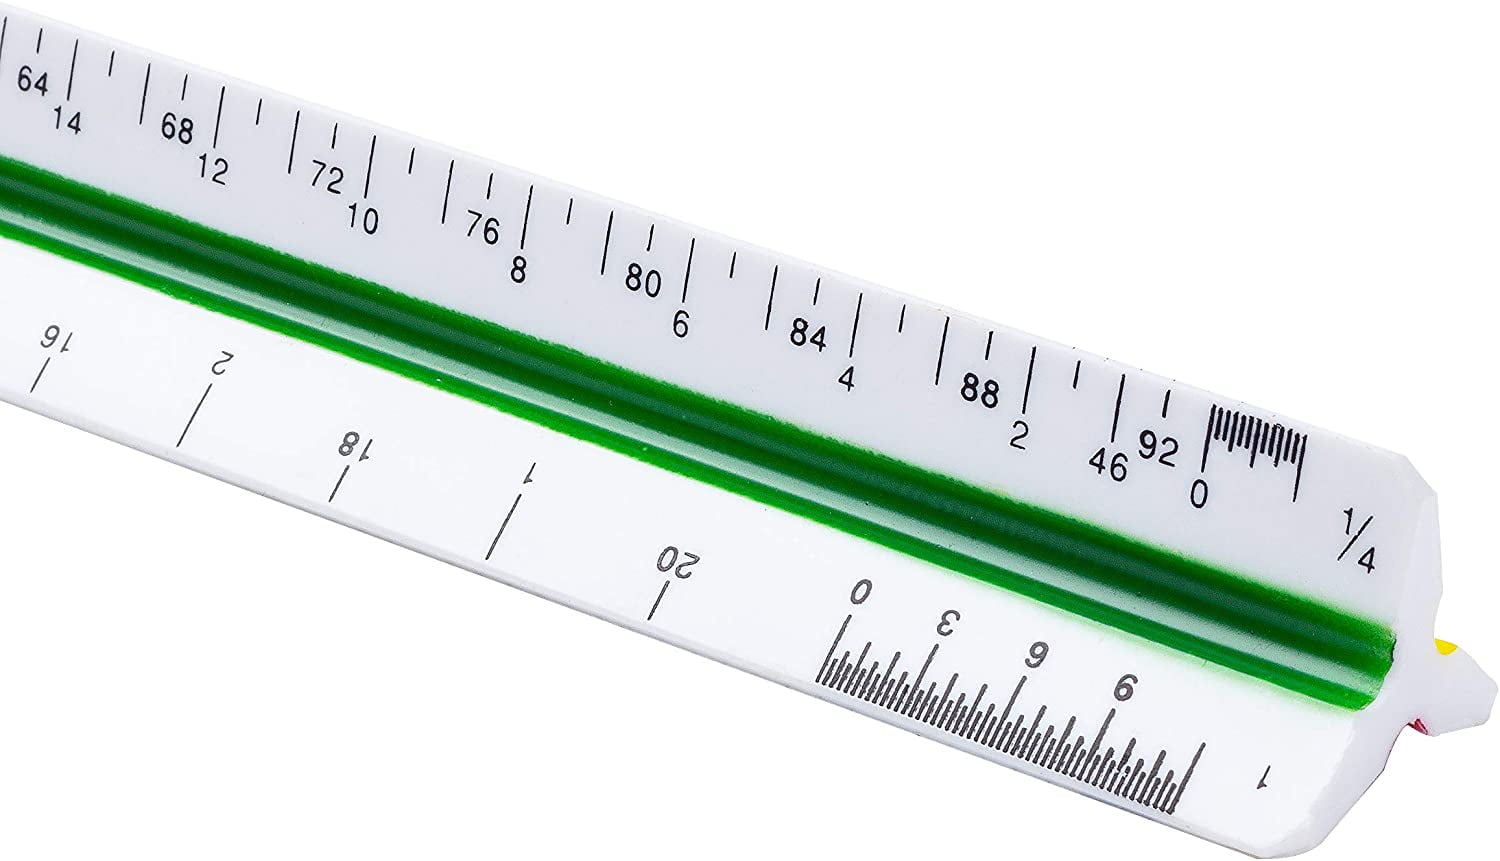 mr-pen-architectural-scale-ruler-12-plastic-architect-scale